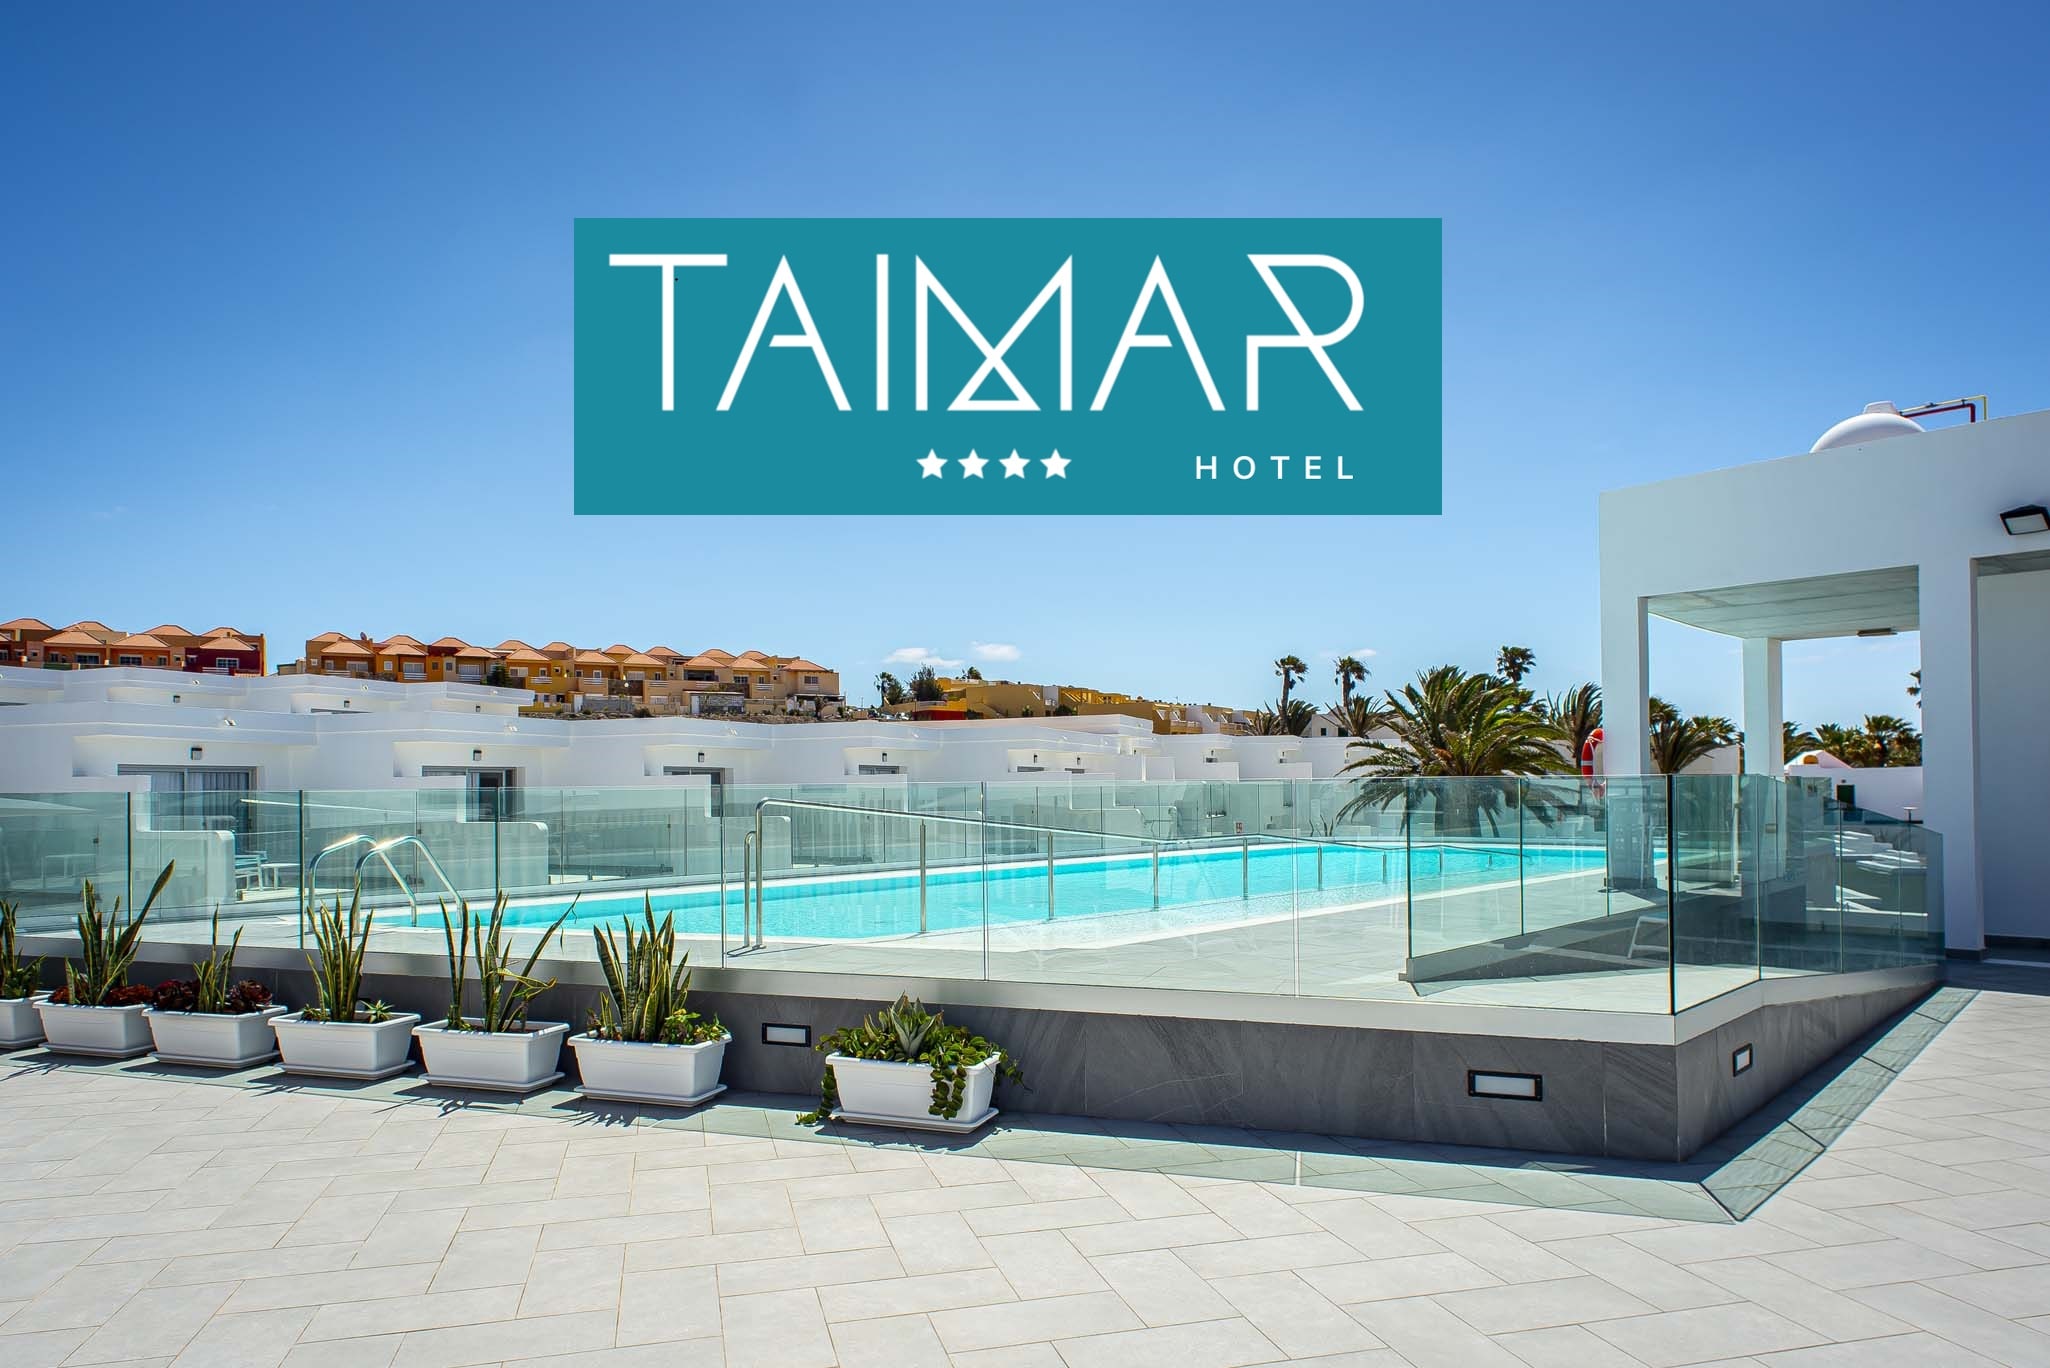 vista panorâmica do complexo de edifícios que formam o Hotel Taimar e uma piscina ao ar livre com rampa para pessoas deficientes.